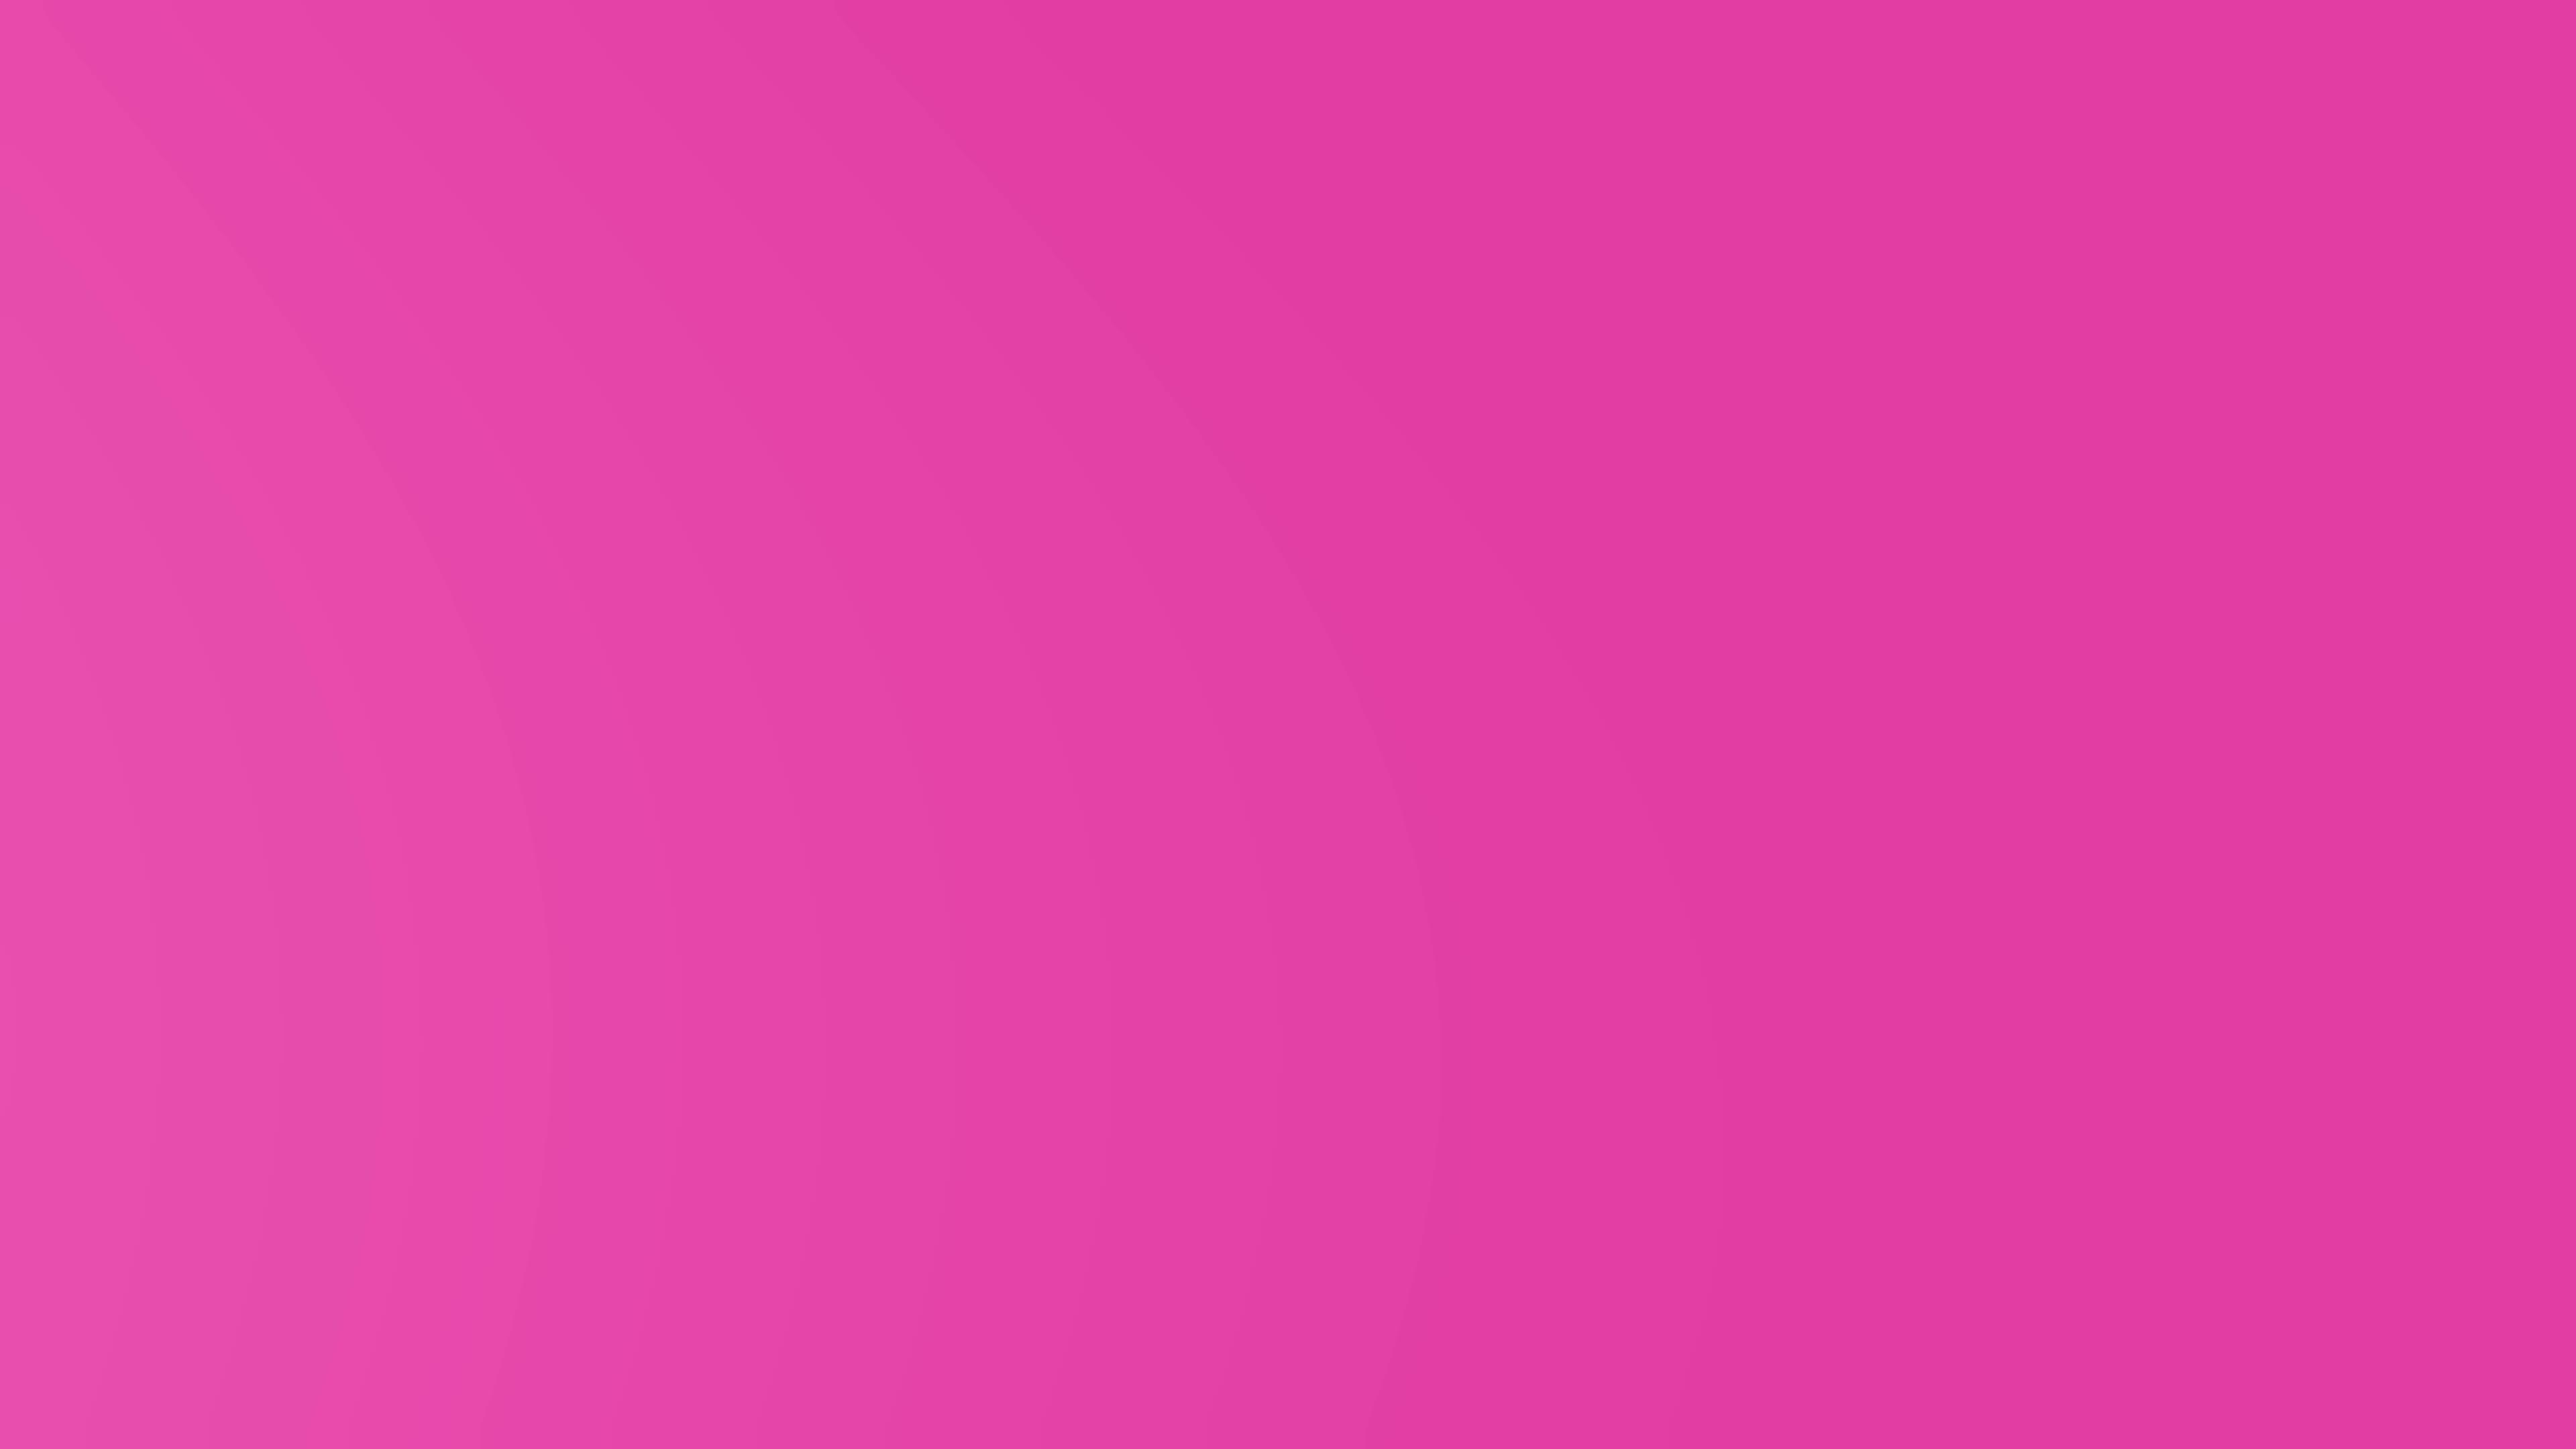 Đoạn video nền màu hồng sắc sảo và đầy màu sắc sẽ khiến bạn cảm thấy hưng phấn và vui vẻ. Hãy xem đoạn video này để tìm kiếm cảm hứng cho việc sử dụng màu hồng trong các dự án của bạn.